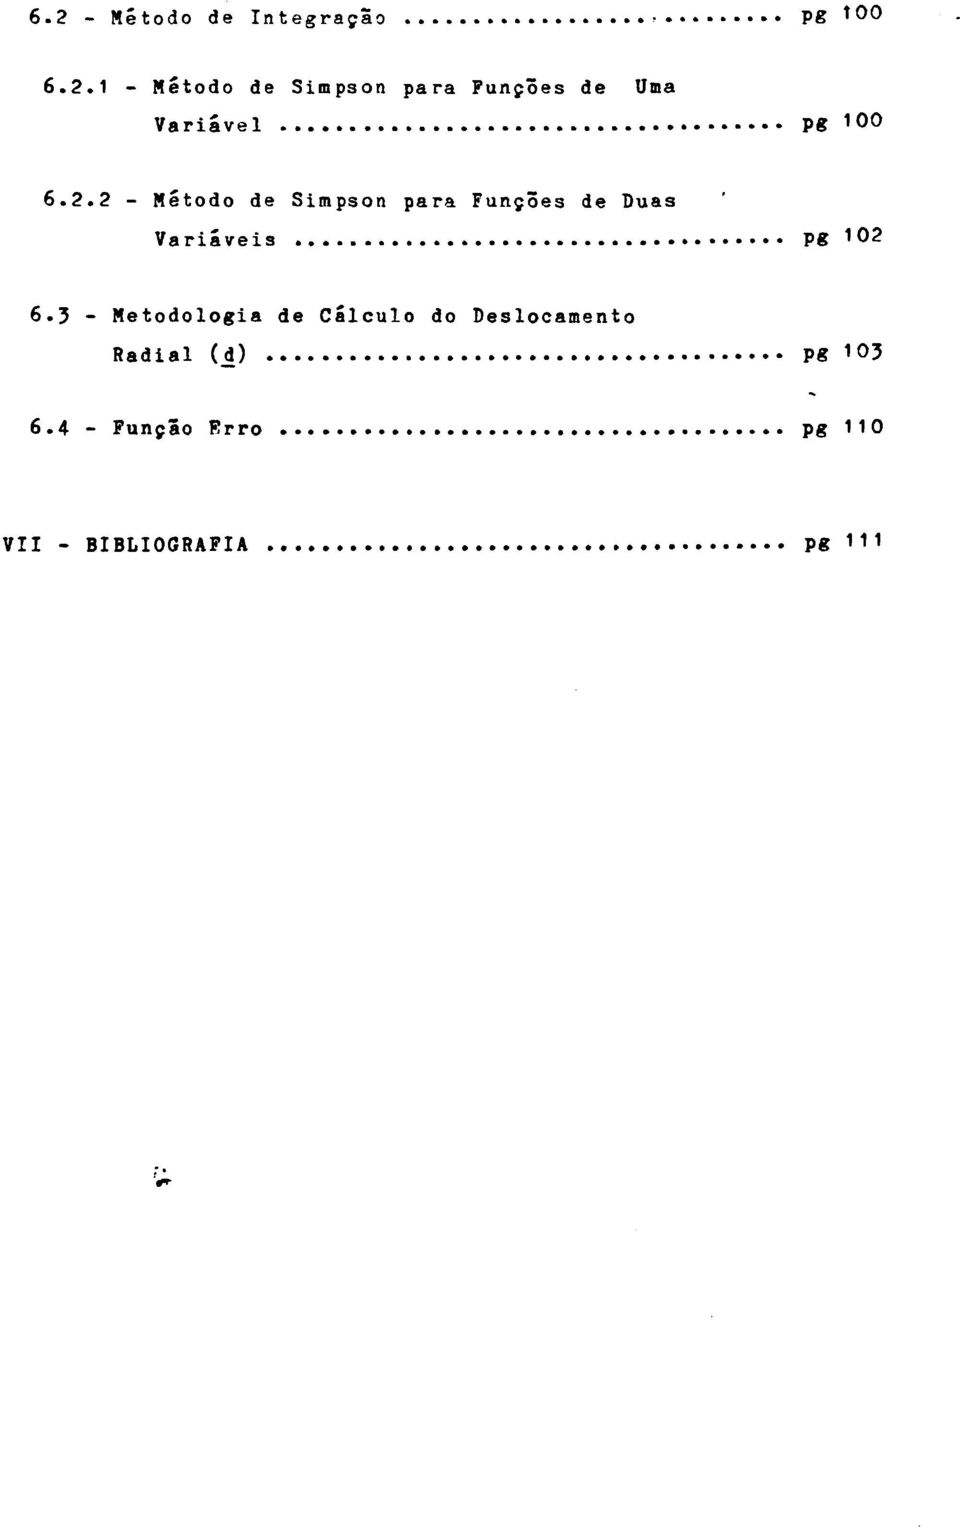 3 - Metodologia de Cálculo do Deslocamento Radial (i) pg1o3 6.